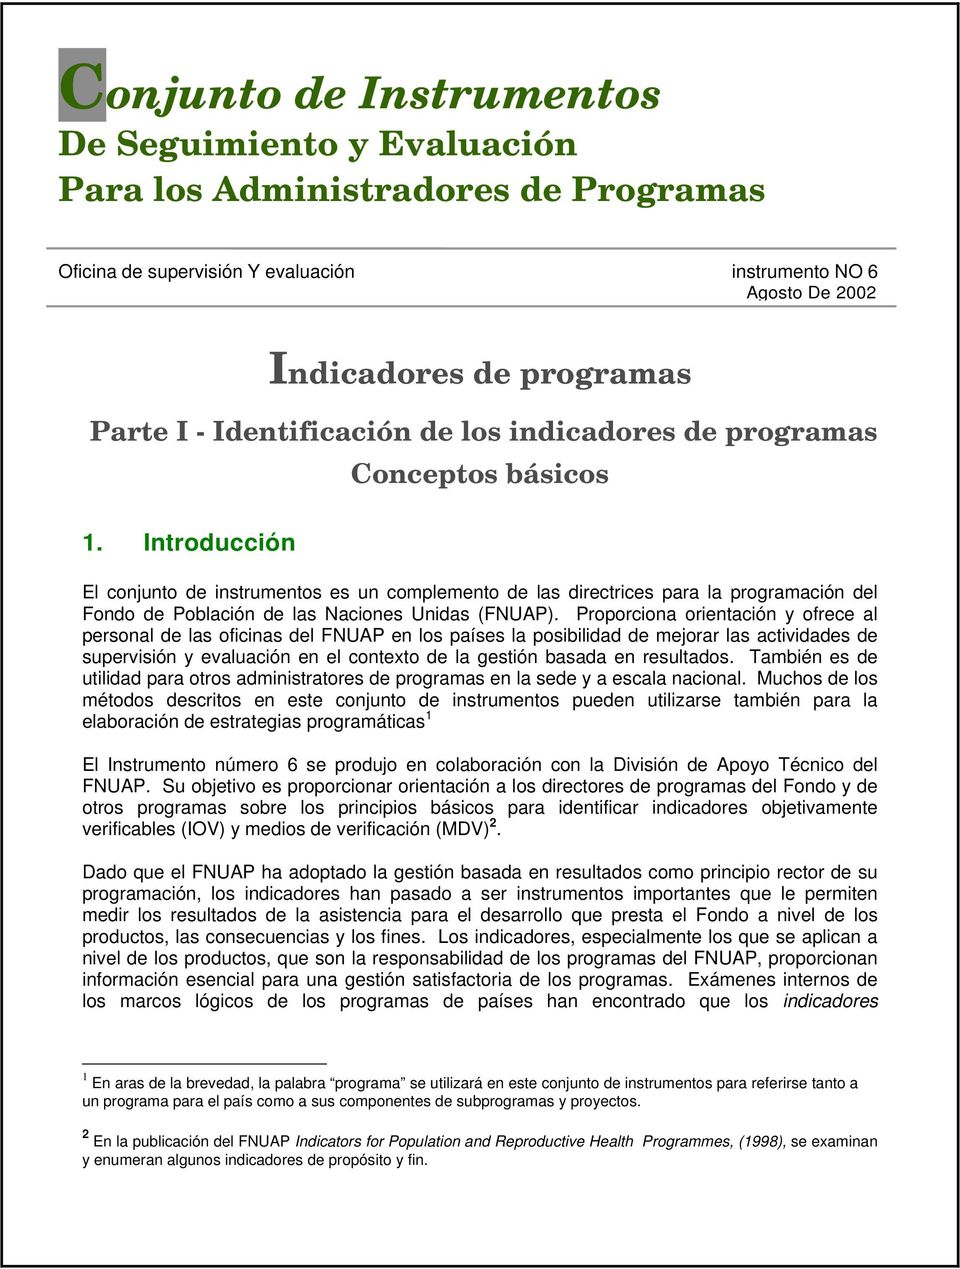 Introducción Conceptos básicos El conjunto de instrumentos es un complemento de las directrices para la programación del Fondo de Población de las Naciones Unidas (FNUAP).